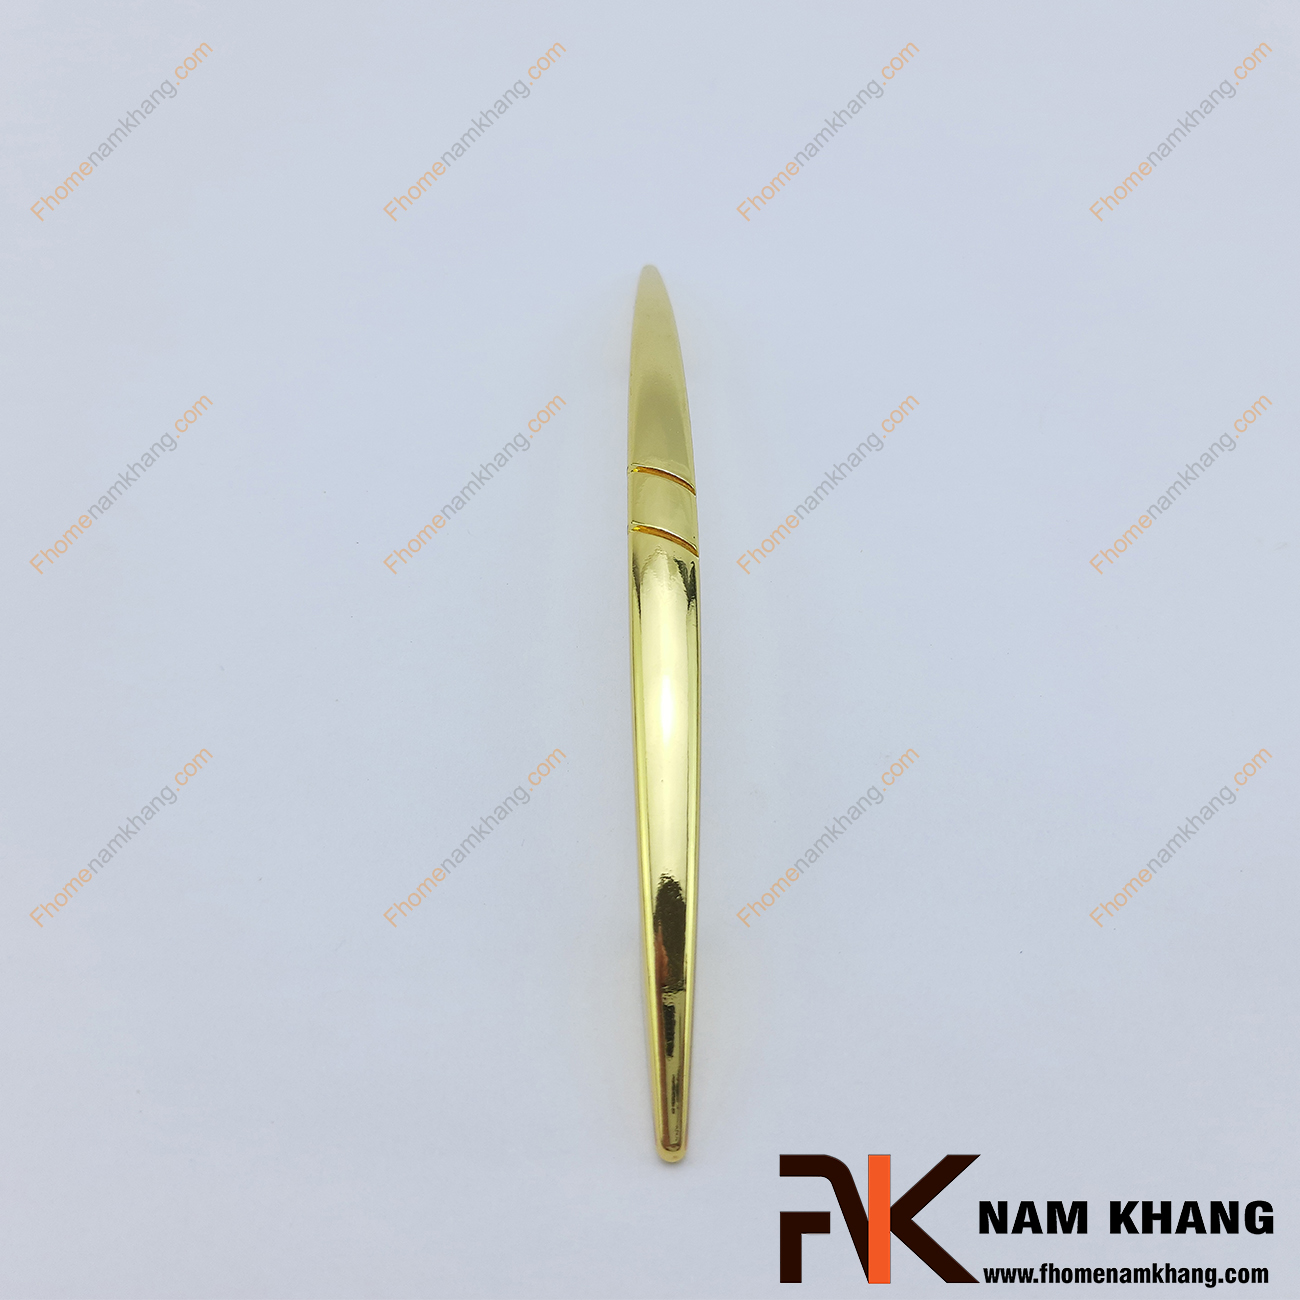 Tay nắm tủ đầu nhọn mạ vàng NK058 có thiết kế thon gọn từ hợp kim chất lượng cao, được gia công hoàn thiện thẩm mỹ cho độ sáng bóng ánh kim cao cấp.